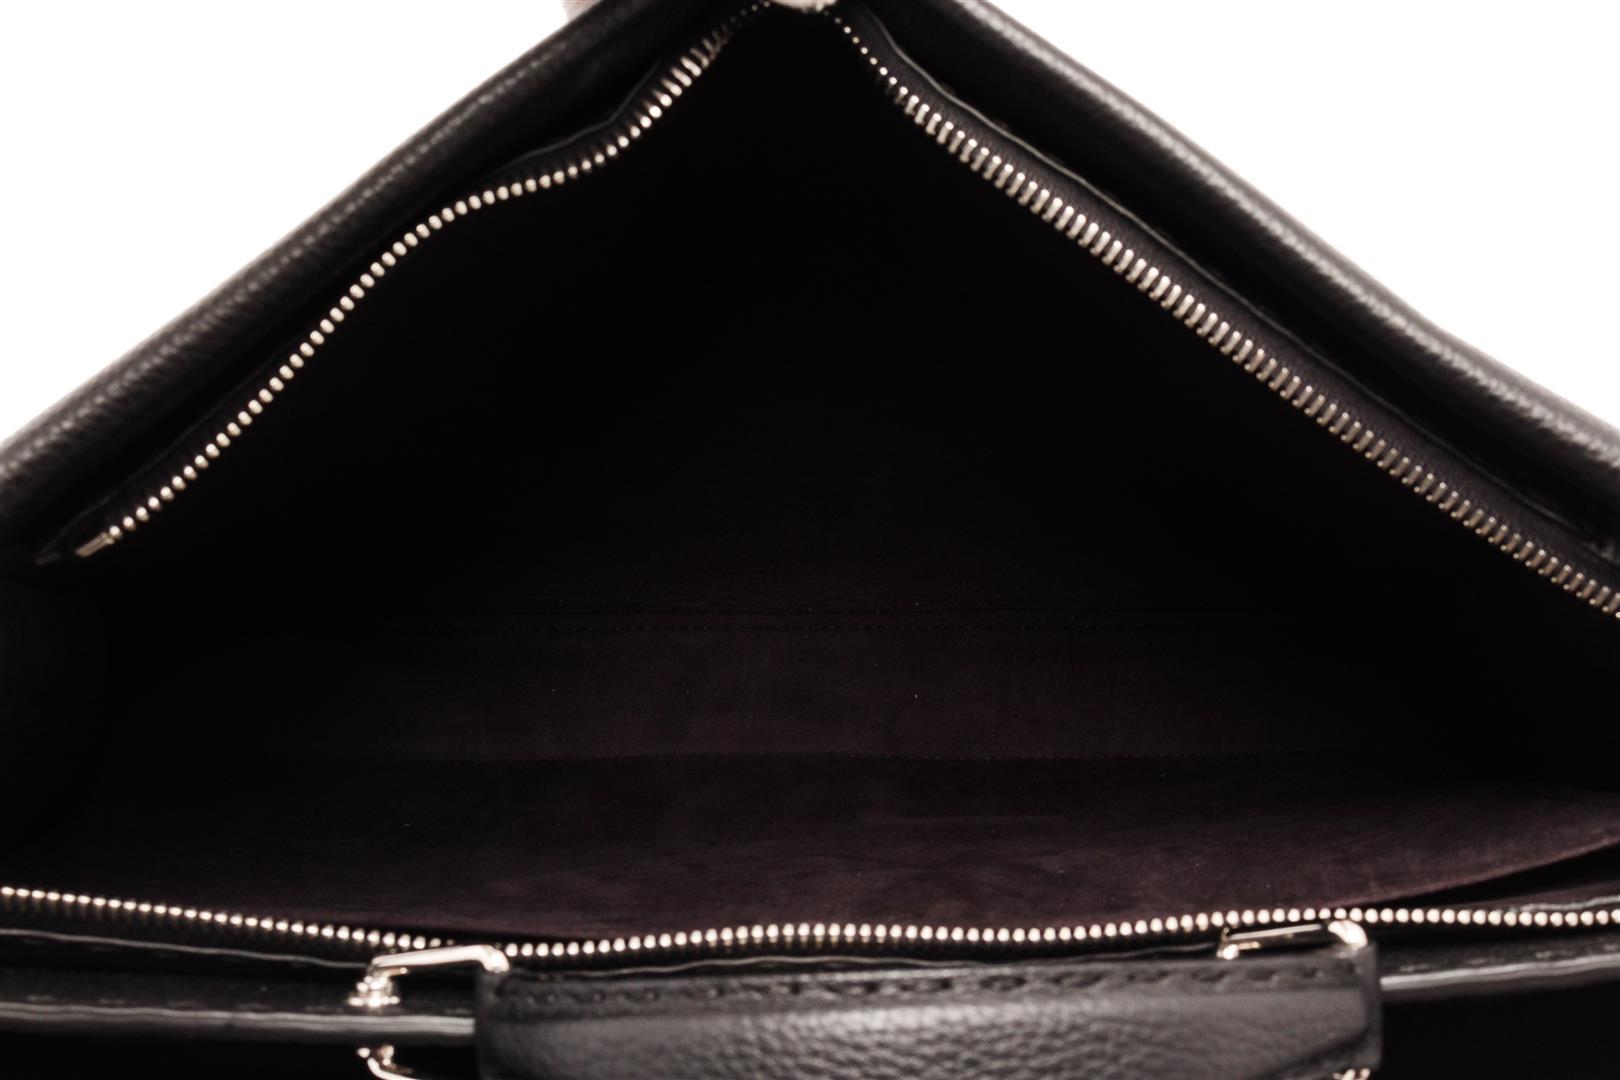 Fendi Black Leather Peekaboo Medium Tote Bag